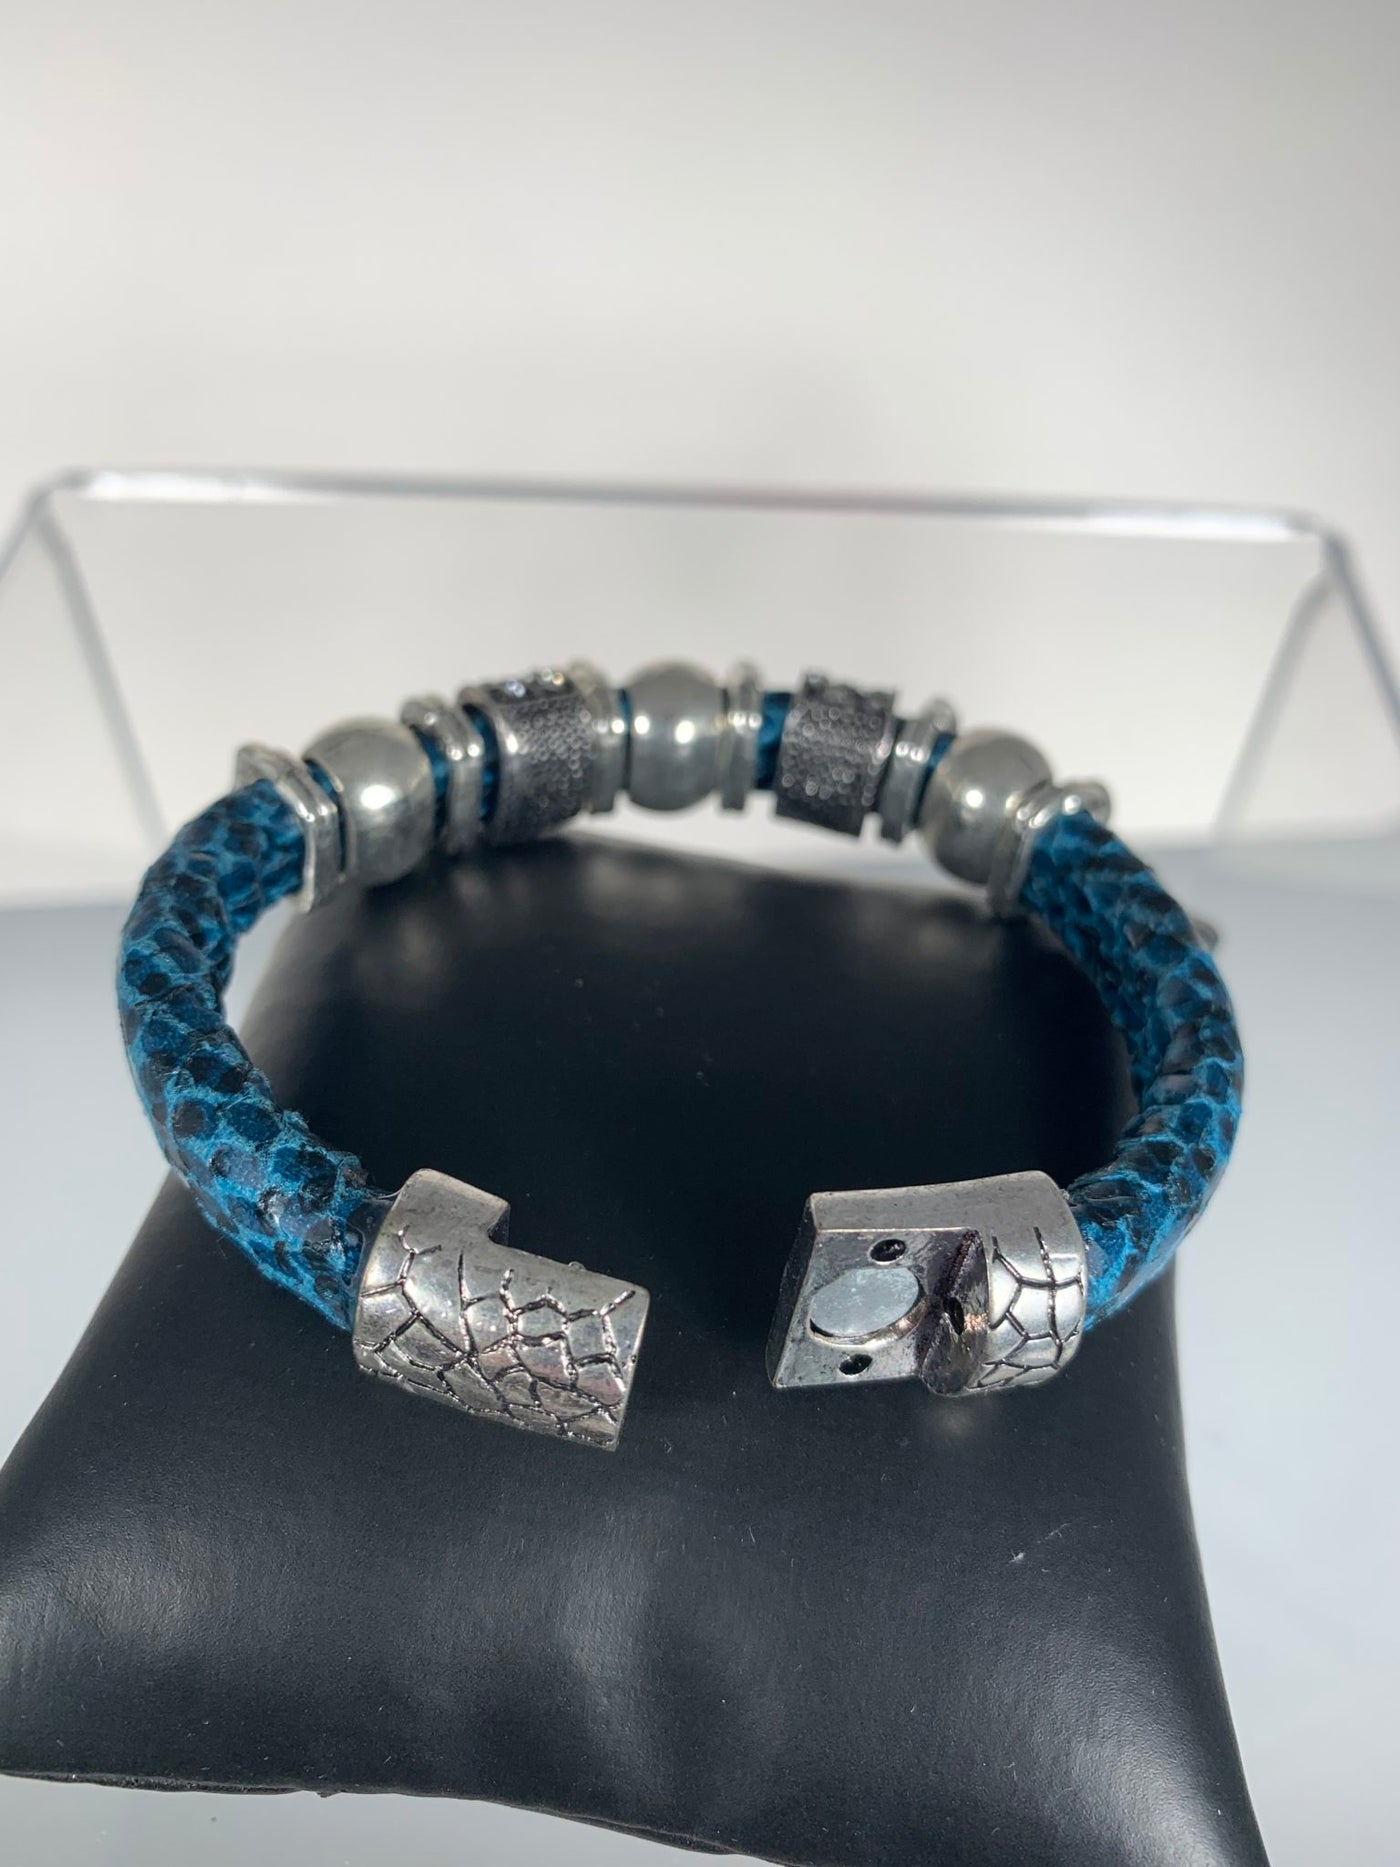 Blue Faux Snake Skin Band Bracelet with Sparks